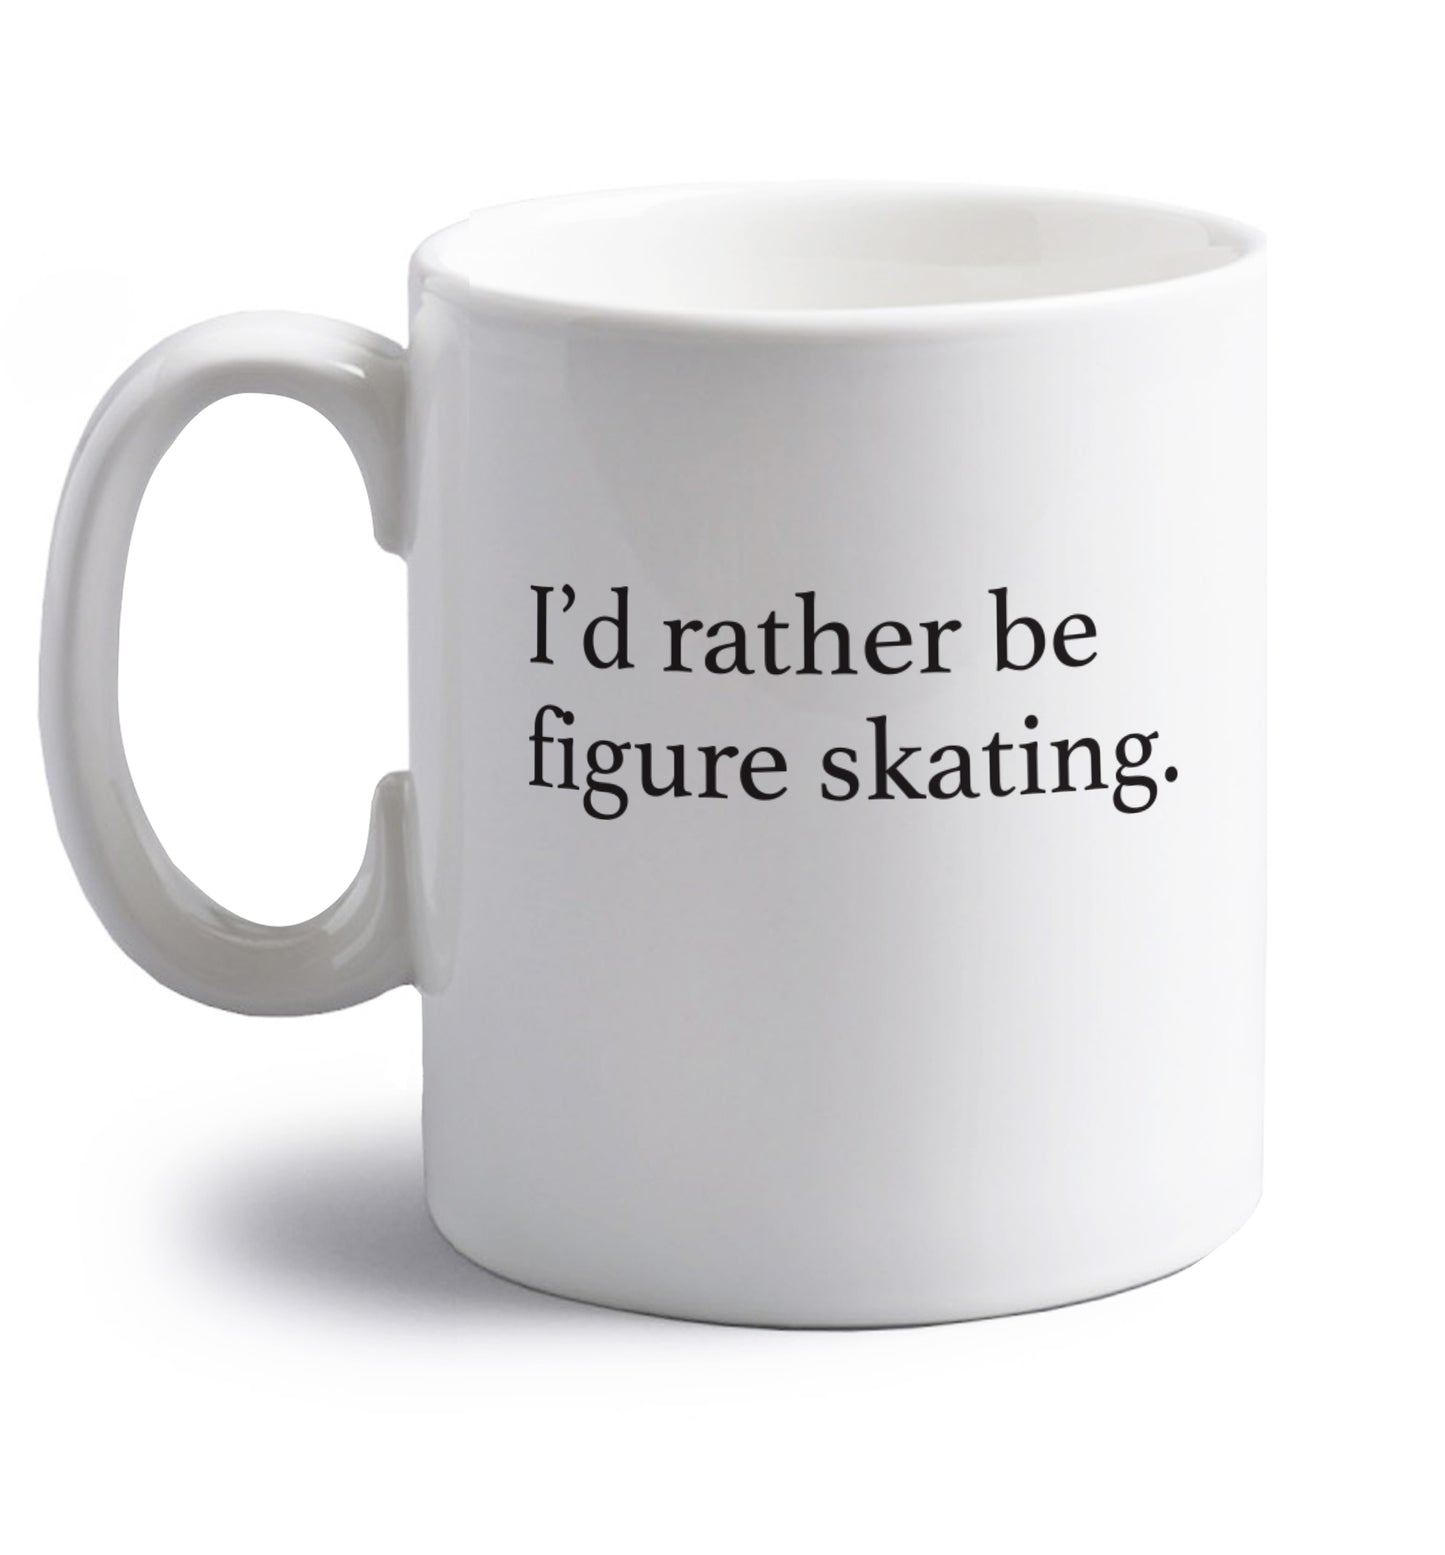 I'd rather be figure skating right handed white ceramic mug 